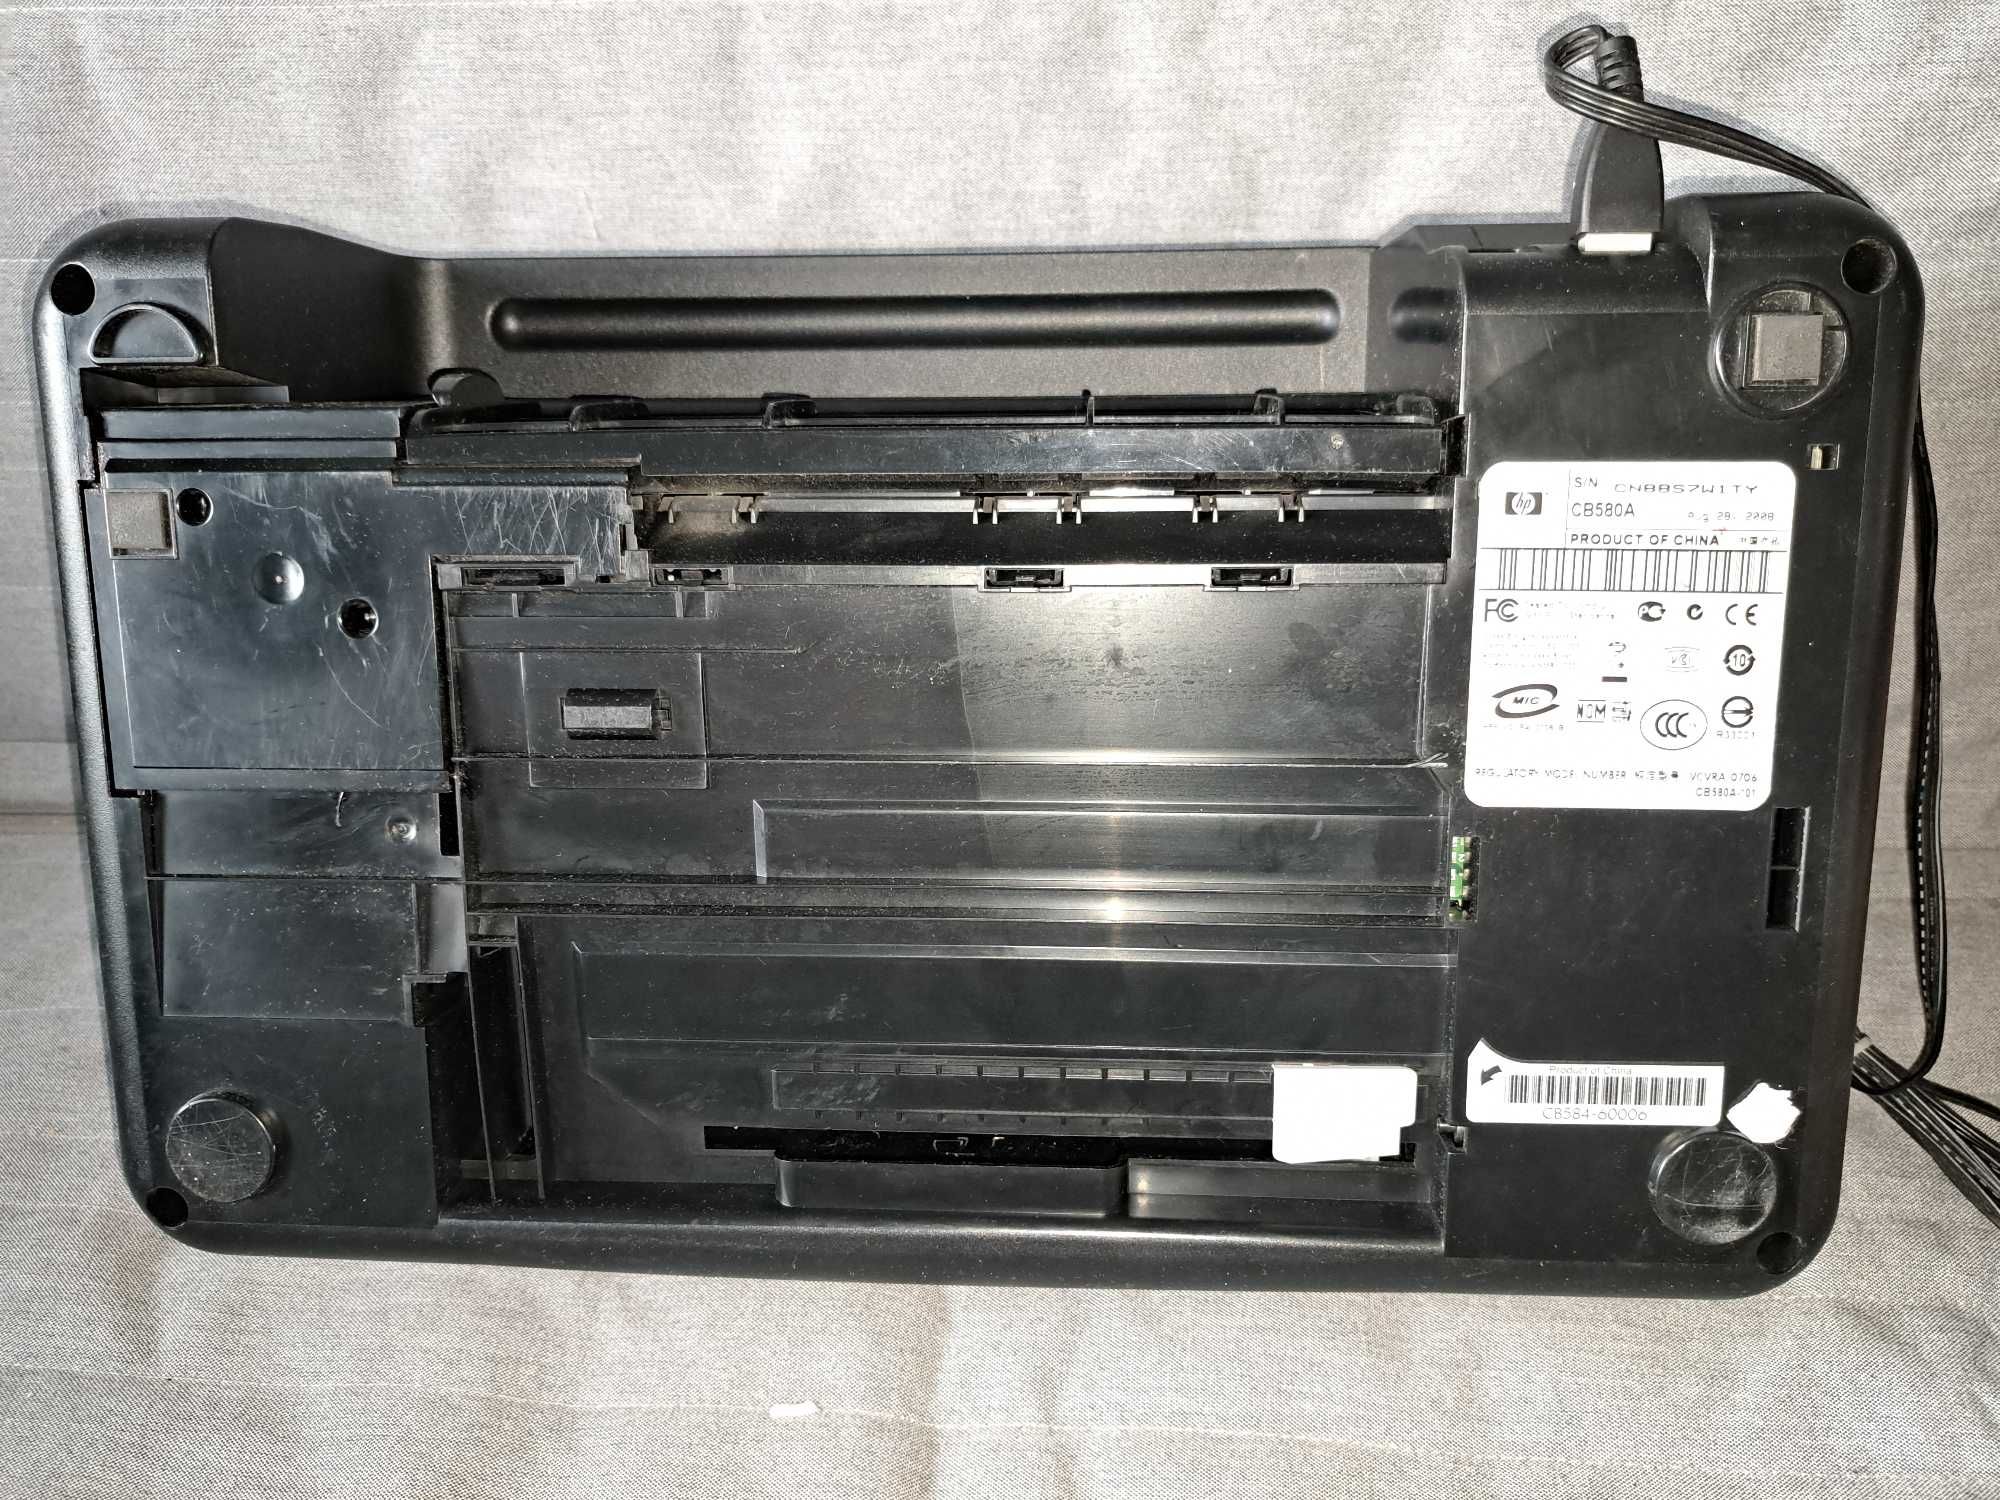 drukarka HP DeskJet F4180 używana uszkodzona